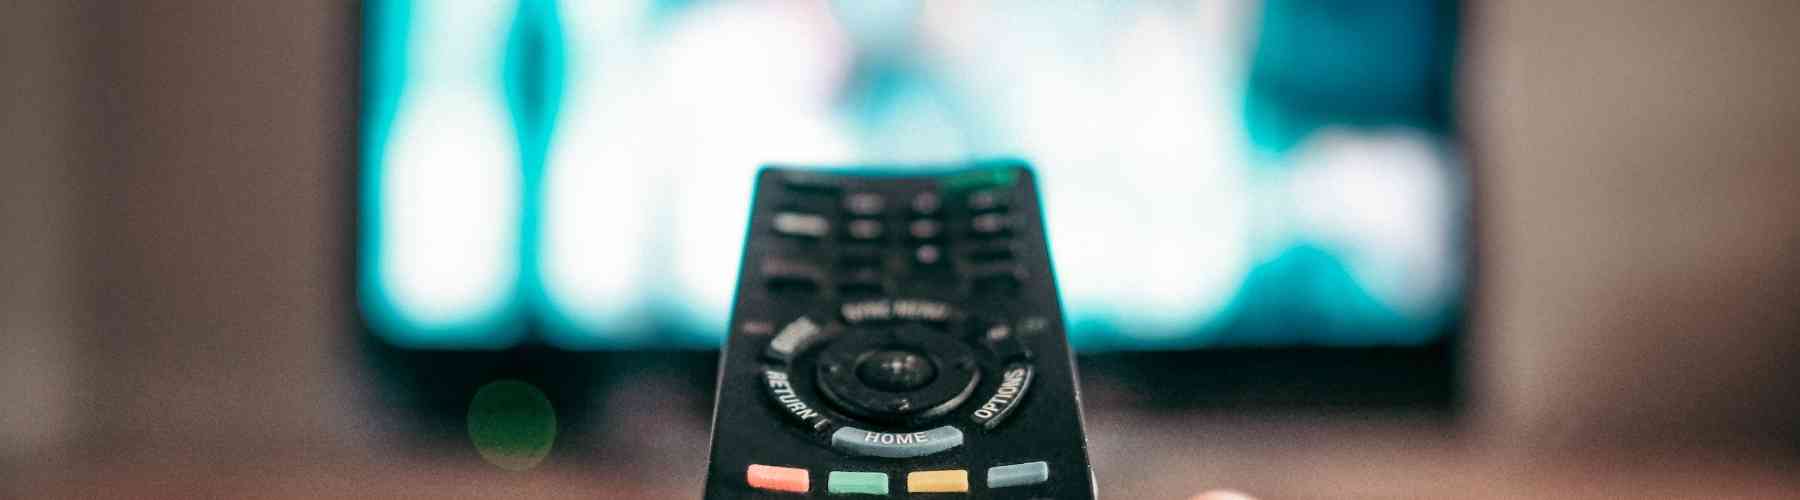 El costo de reducir la televisión